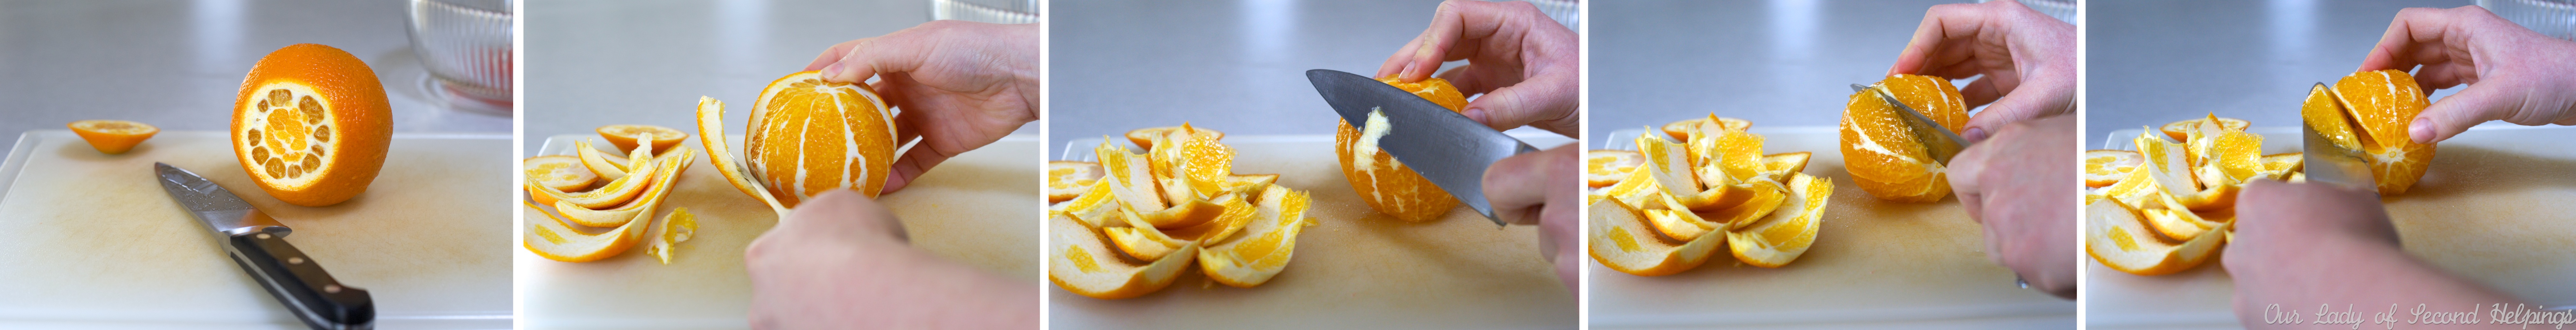 How to cut orange segments